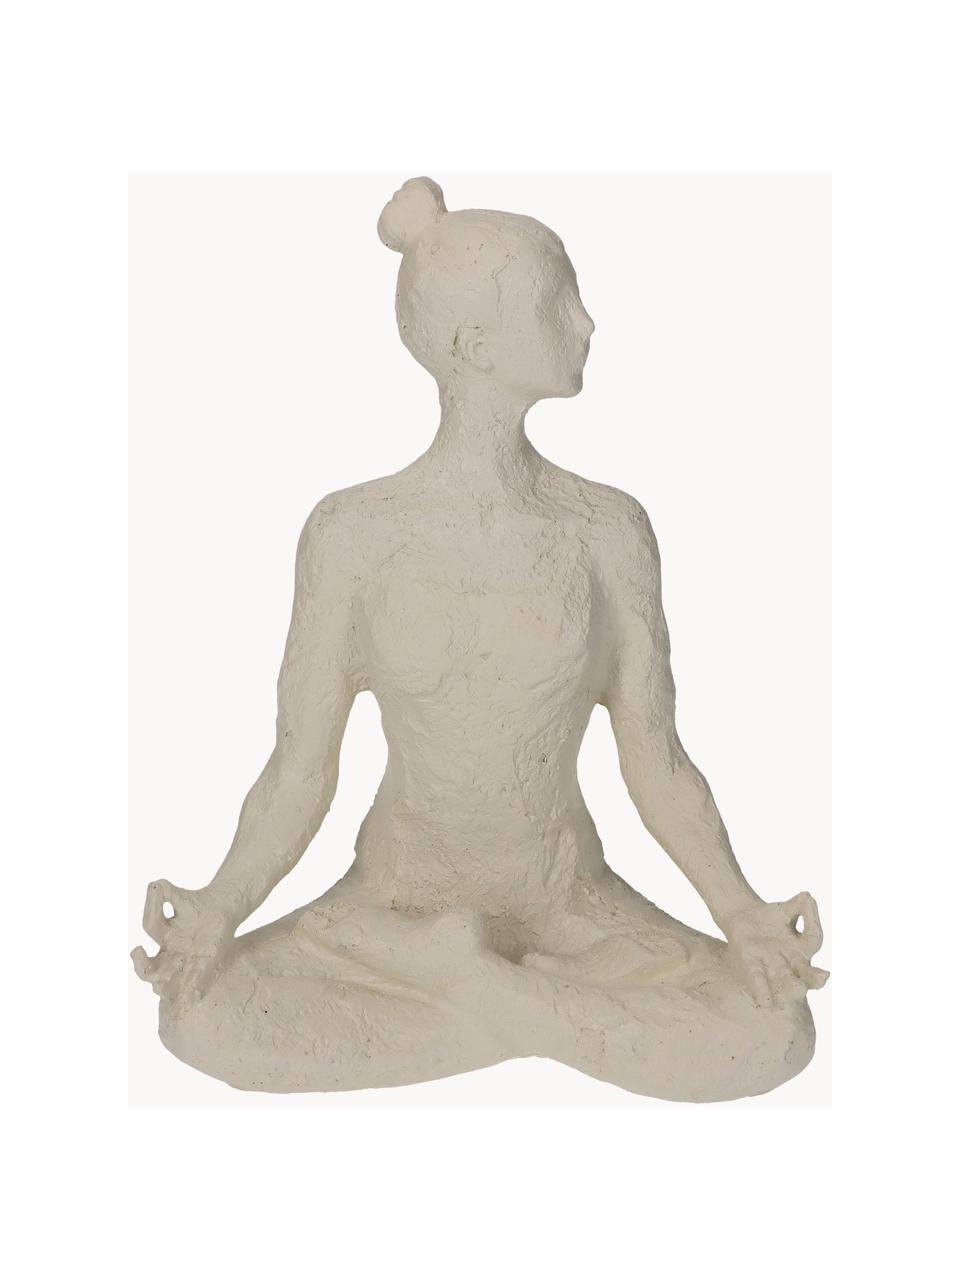 Objet décoratif Yoga, Polyrésine, Blanc cassé, larg. 18 x haut. 24 cm